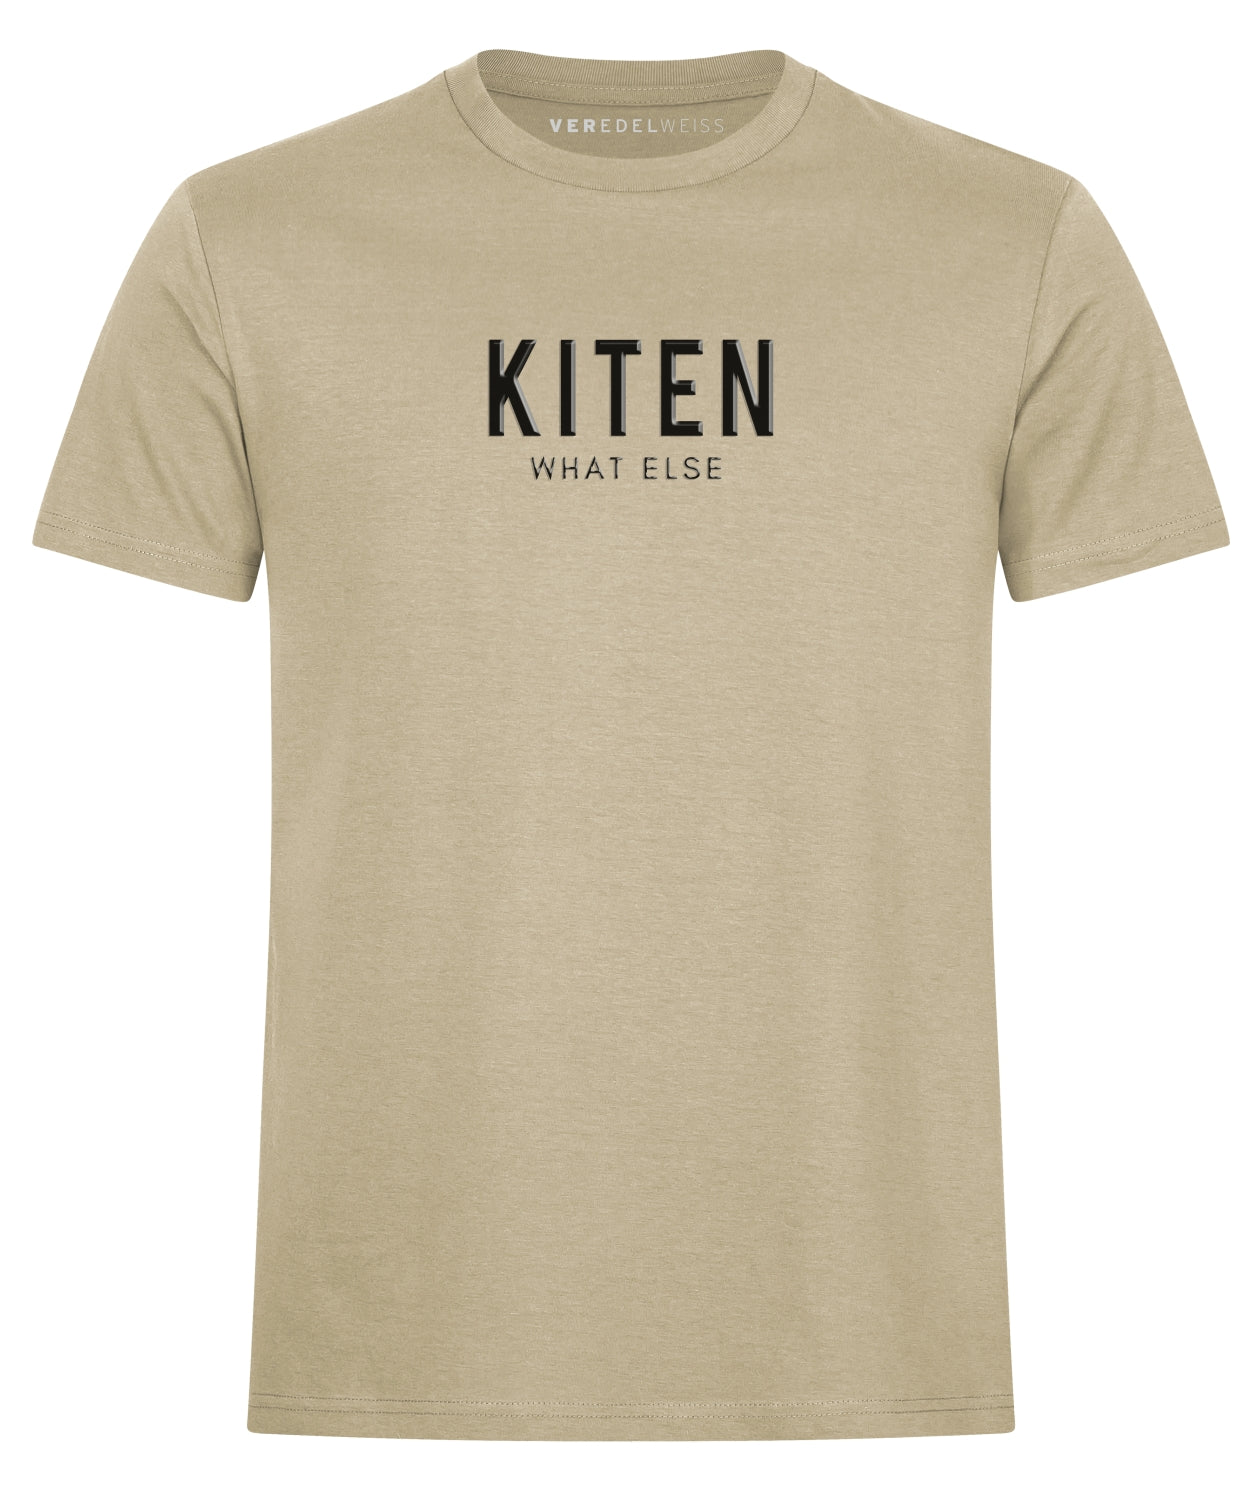 Kiten - What Else (Herren/Unisex) Kiten - What Else (Herren/Unisex)